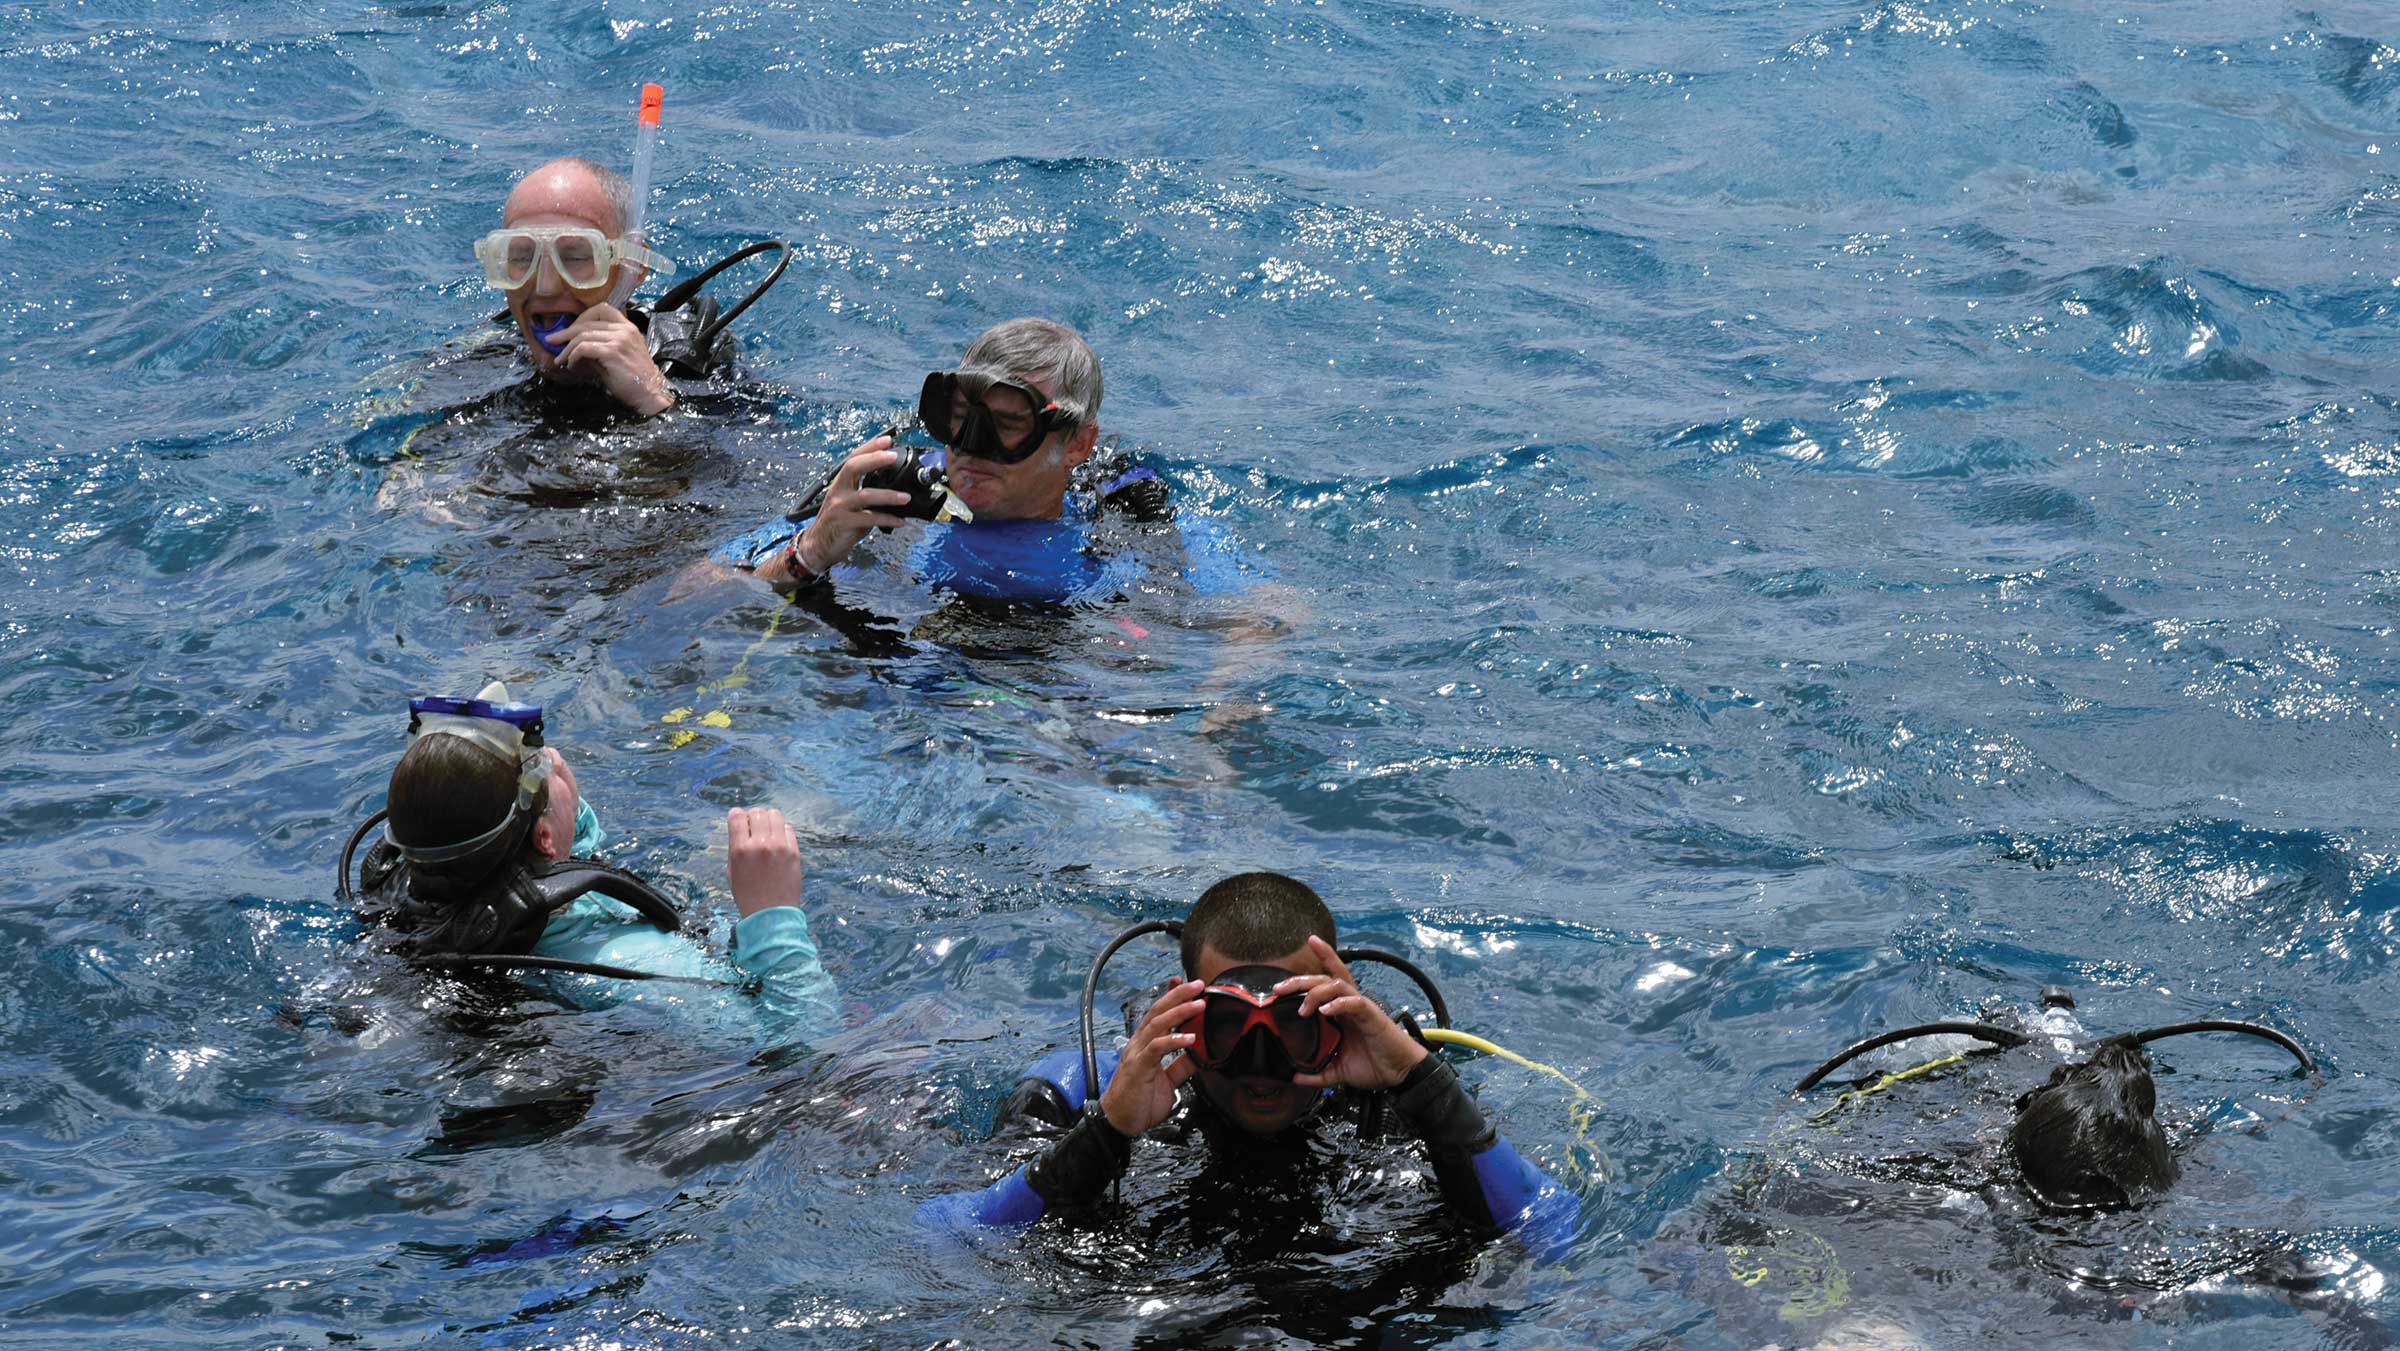 Snorkelers in the ocean off Cuba